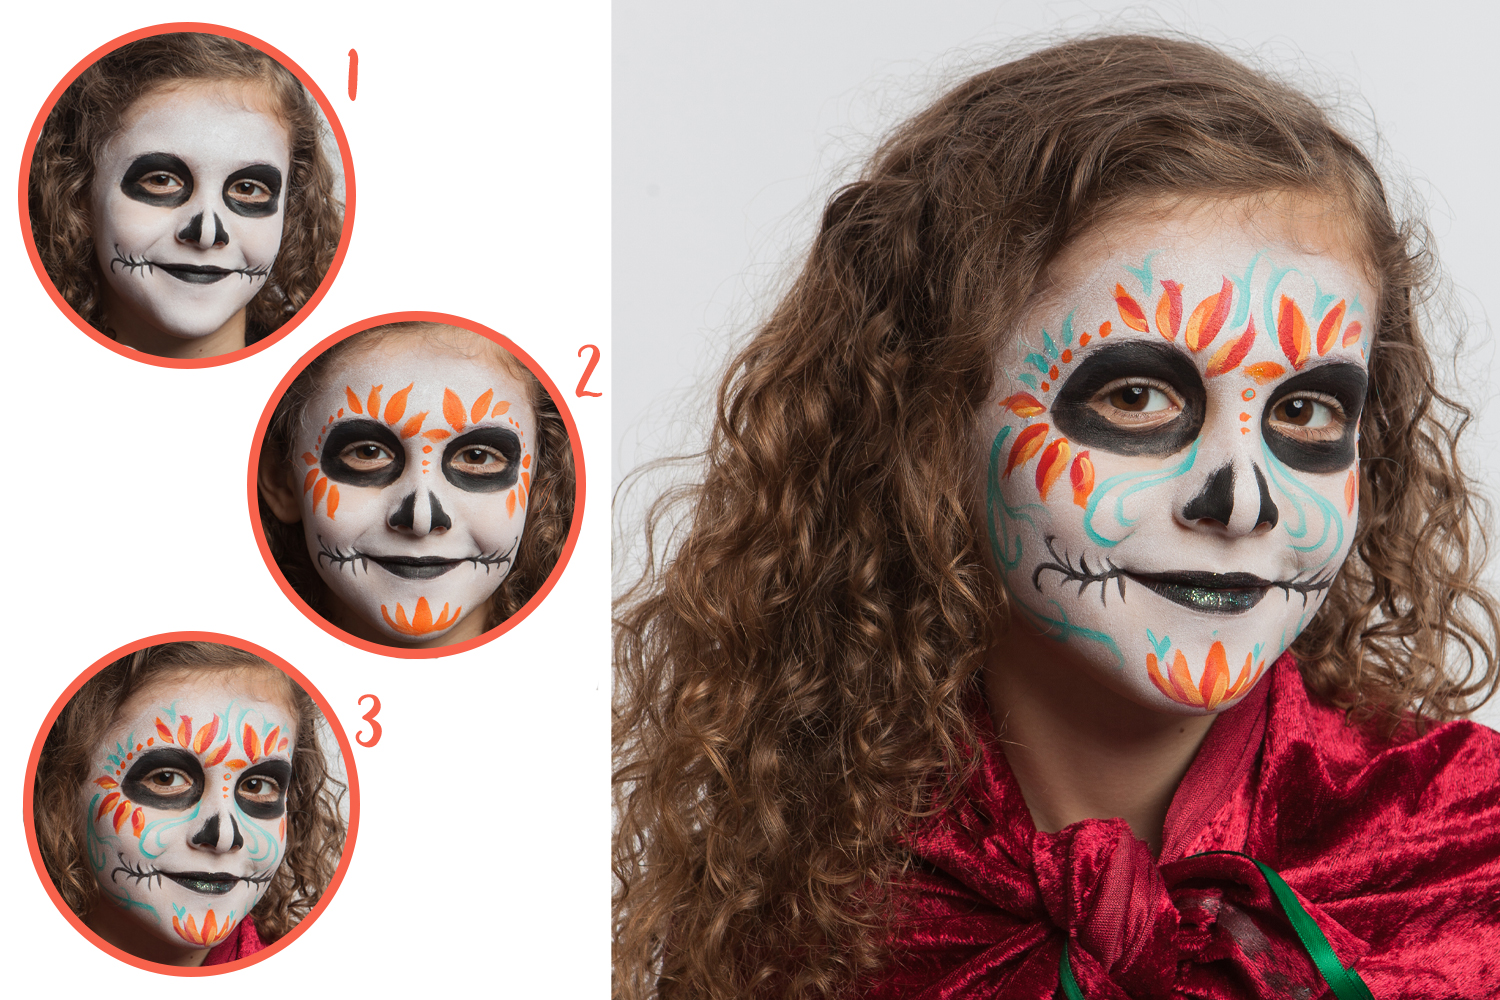 Couleurs de maquillage pour enfants, palette de maquillage 15 couleurs 2  stylos + 4 modèles Set de maquillage pour enfants pour fêtes d'enfants et  maquillage de carnaval